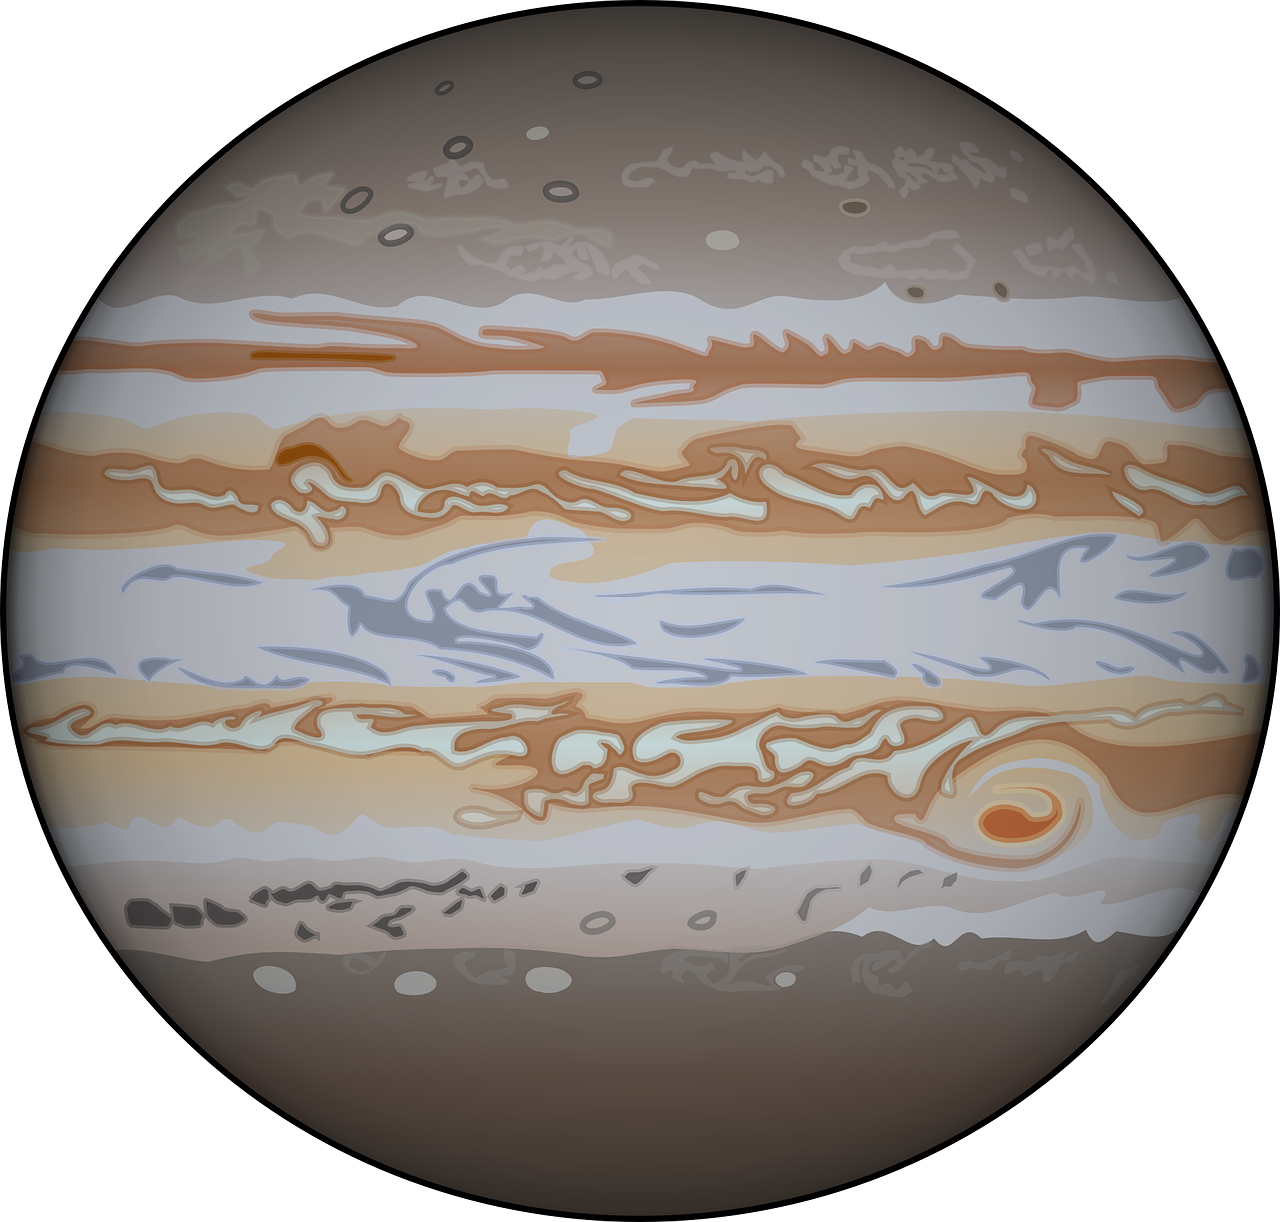 Descubriendo el Volumen de Júpiter